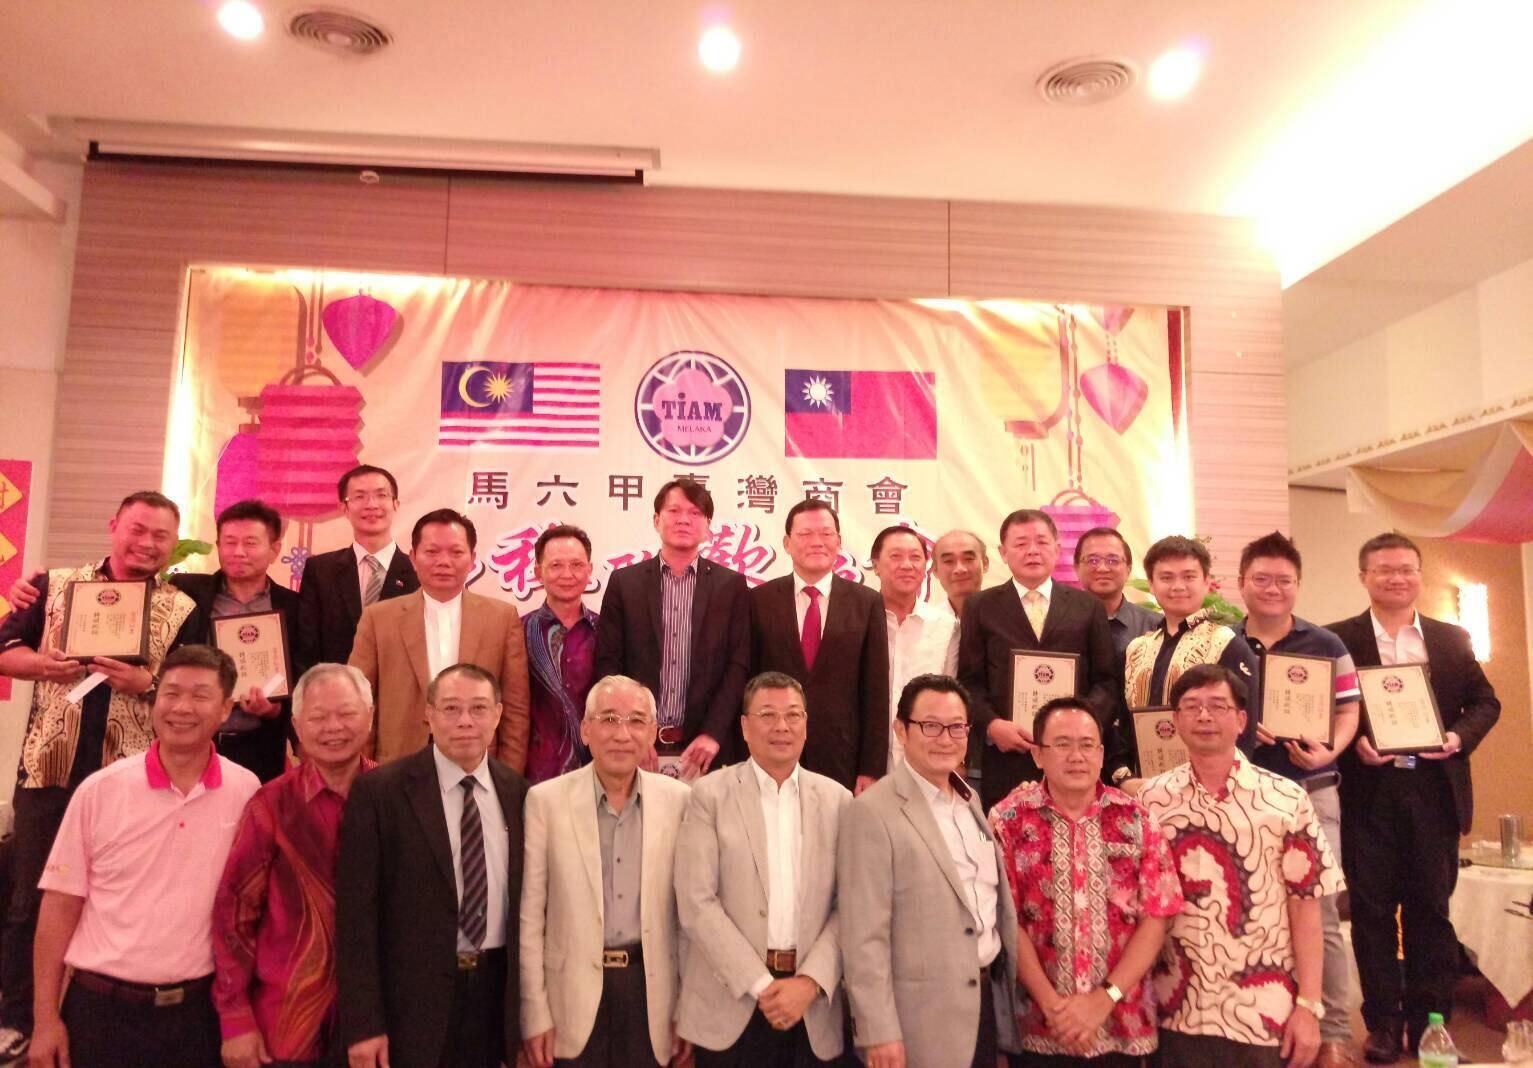 Wakil Chang, James Chi-Ping dengan Melaka Standing Committee, Persident Jasin Wu dan semua majlis mengambil gambar.